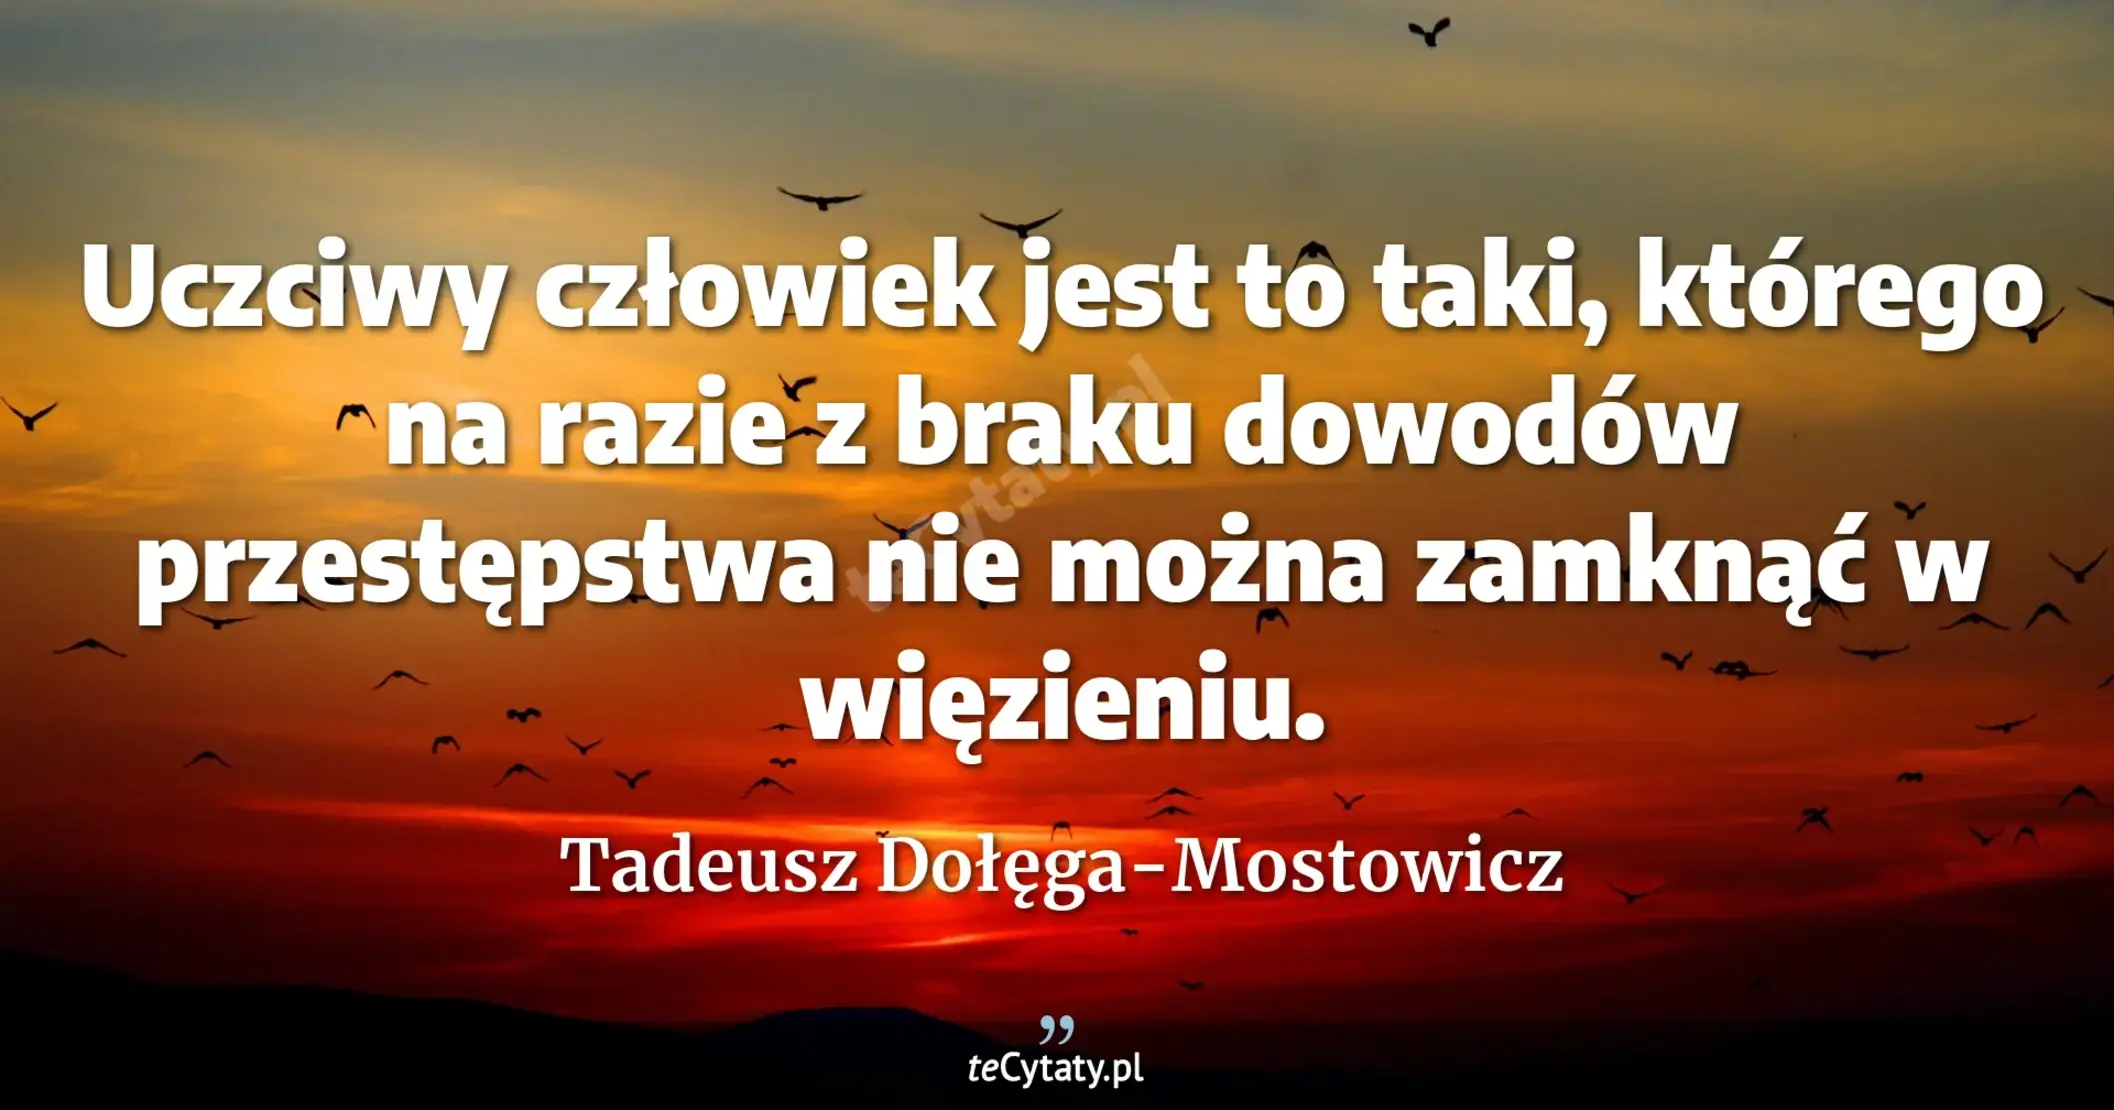 Uczciwy człowiek jest to taki, którego na razie z braku dowodów przestępstwa nie można zamknąć w więzieniu. - Tadeusz Dołęga-Mostowicz